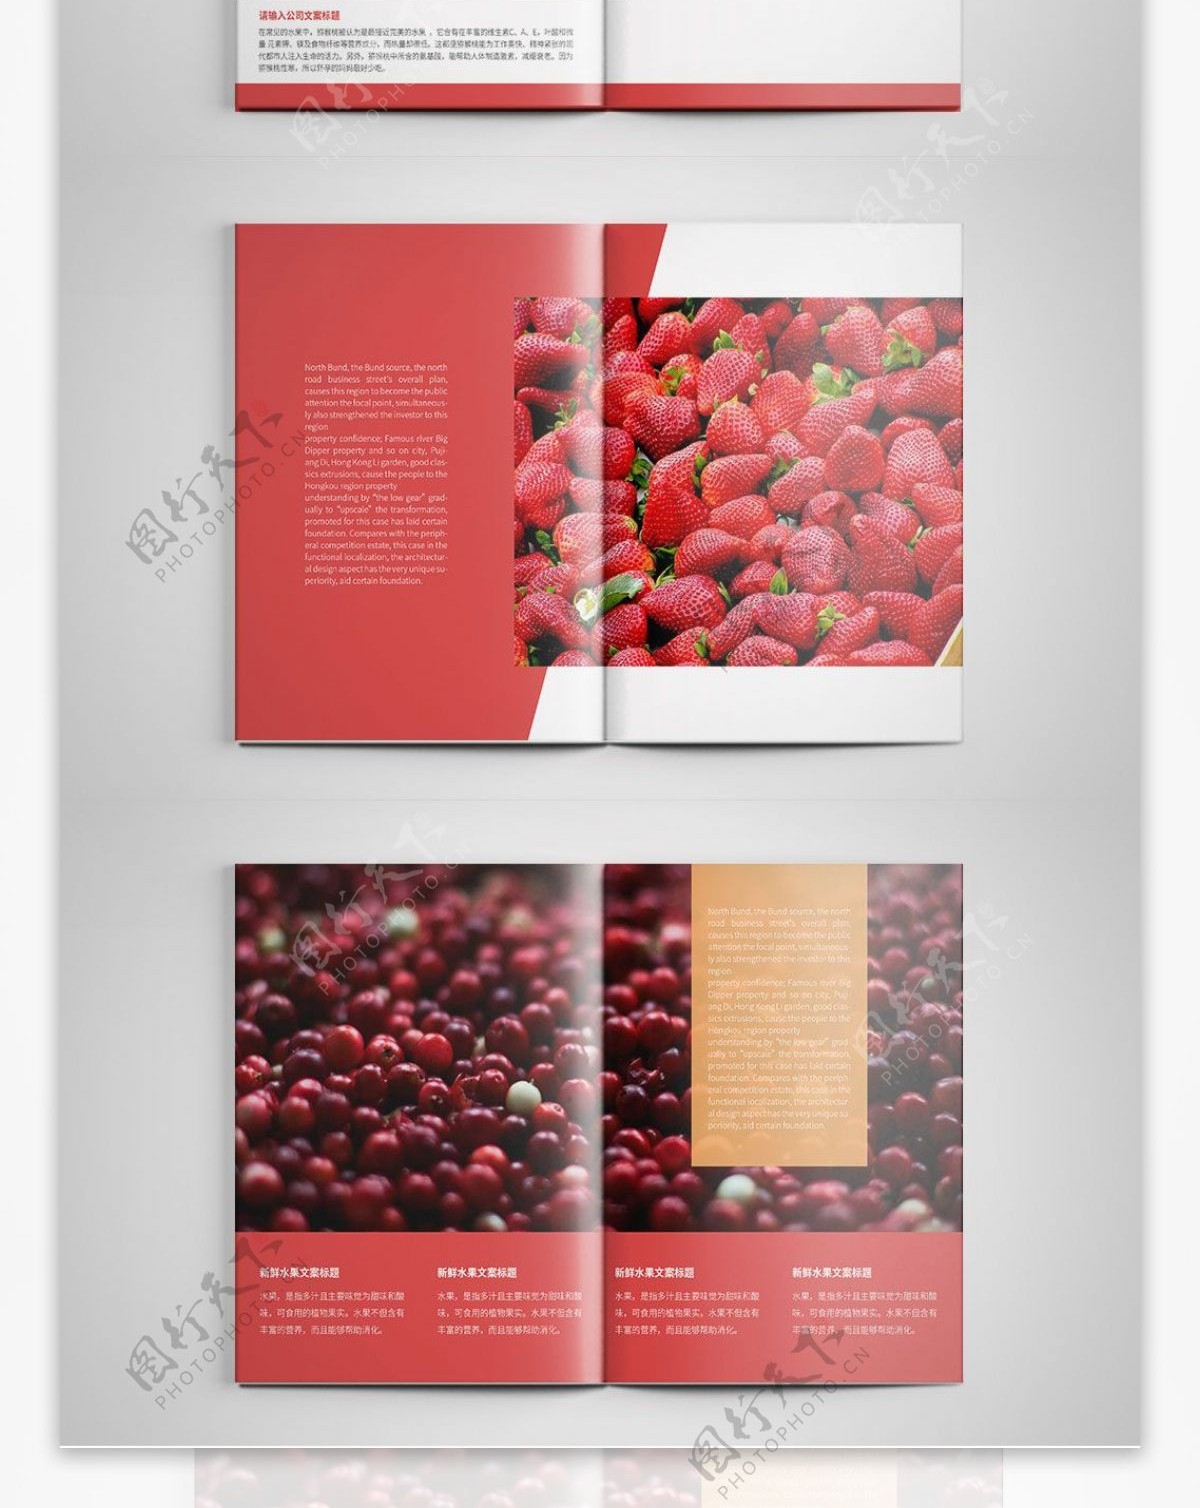 简约新鲜水果宣传画册设计PSD模板